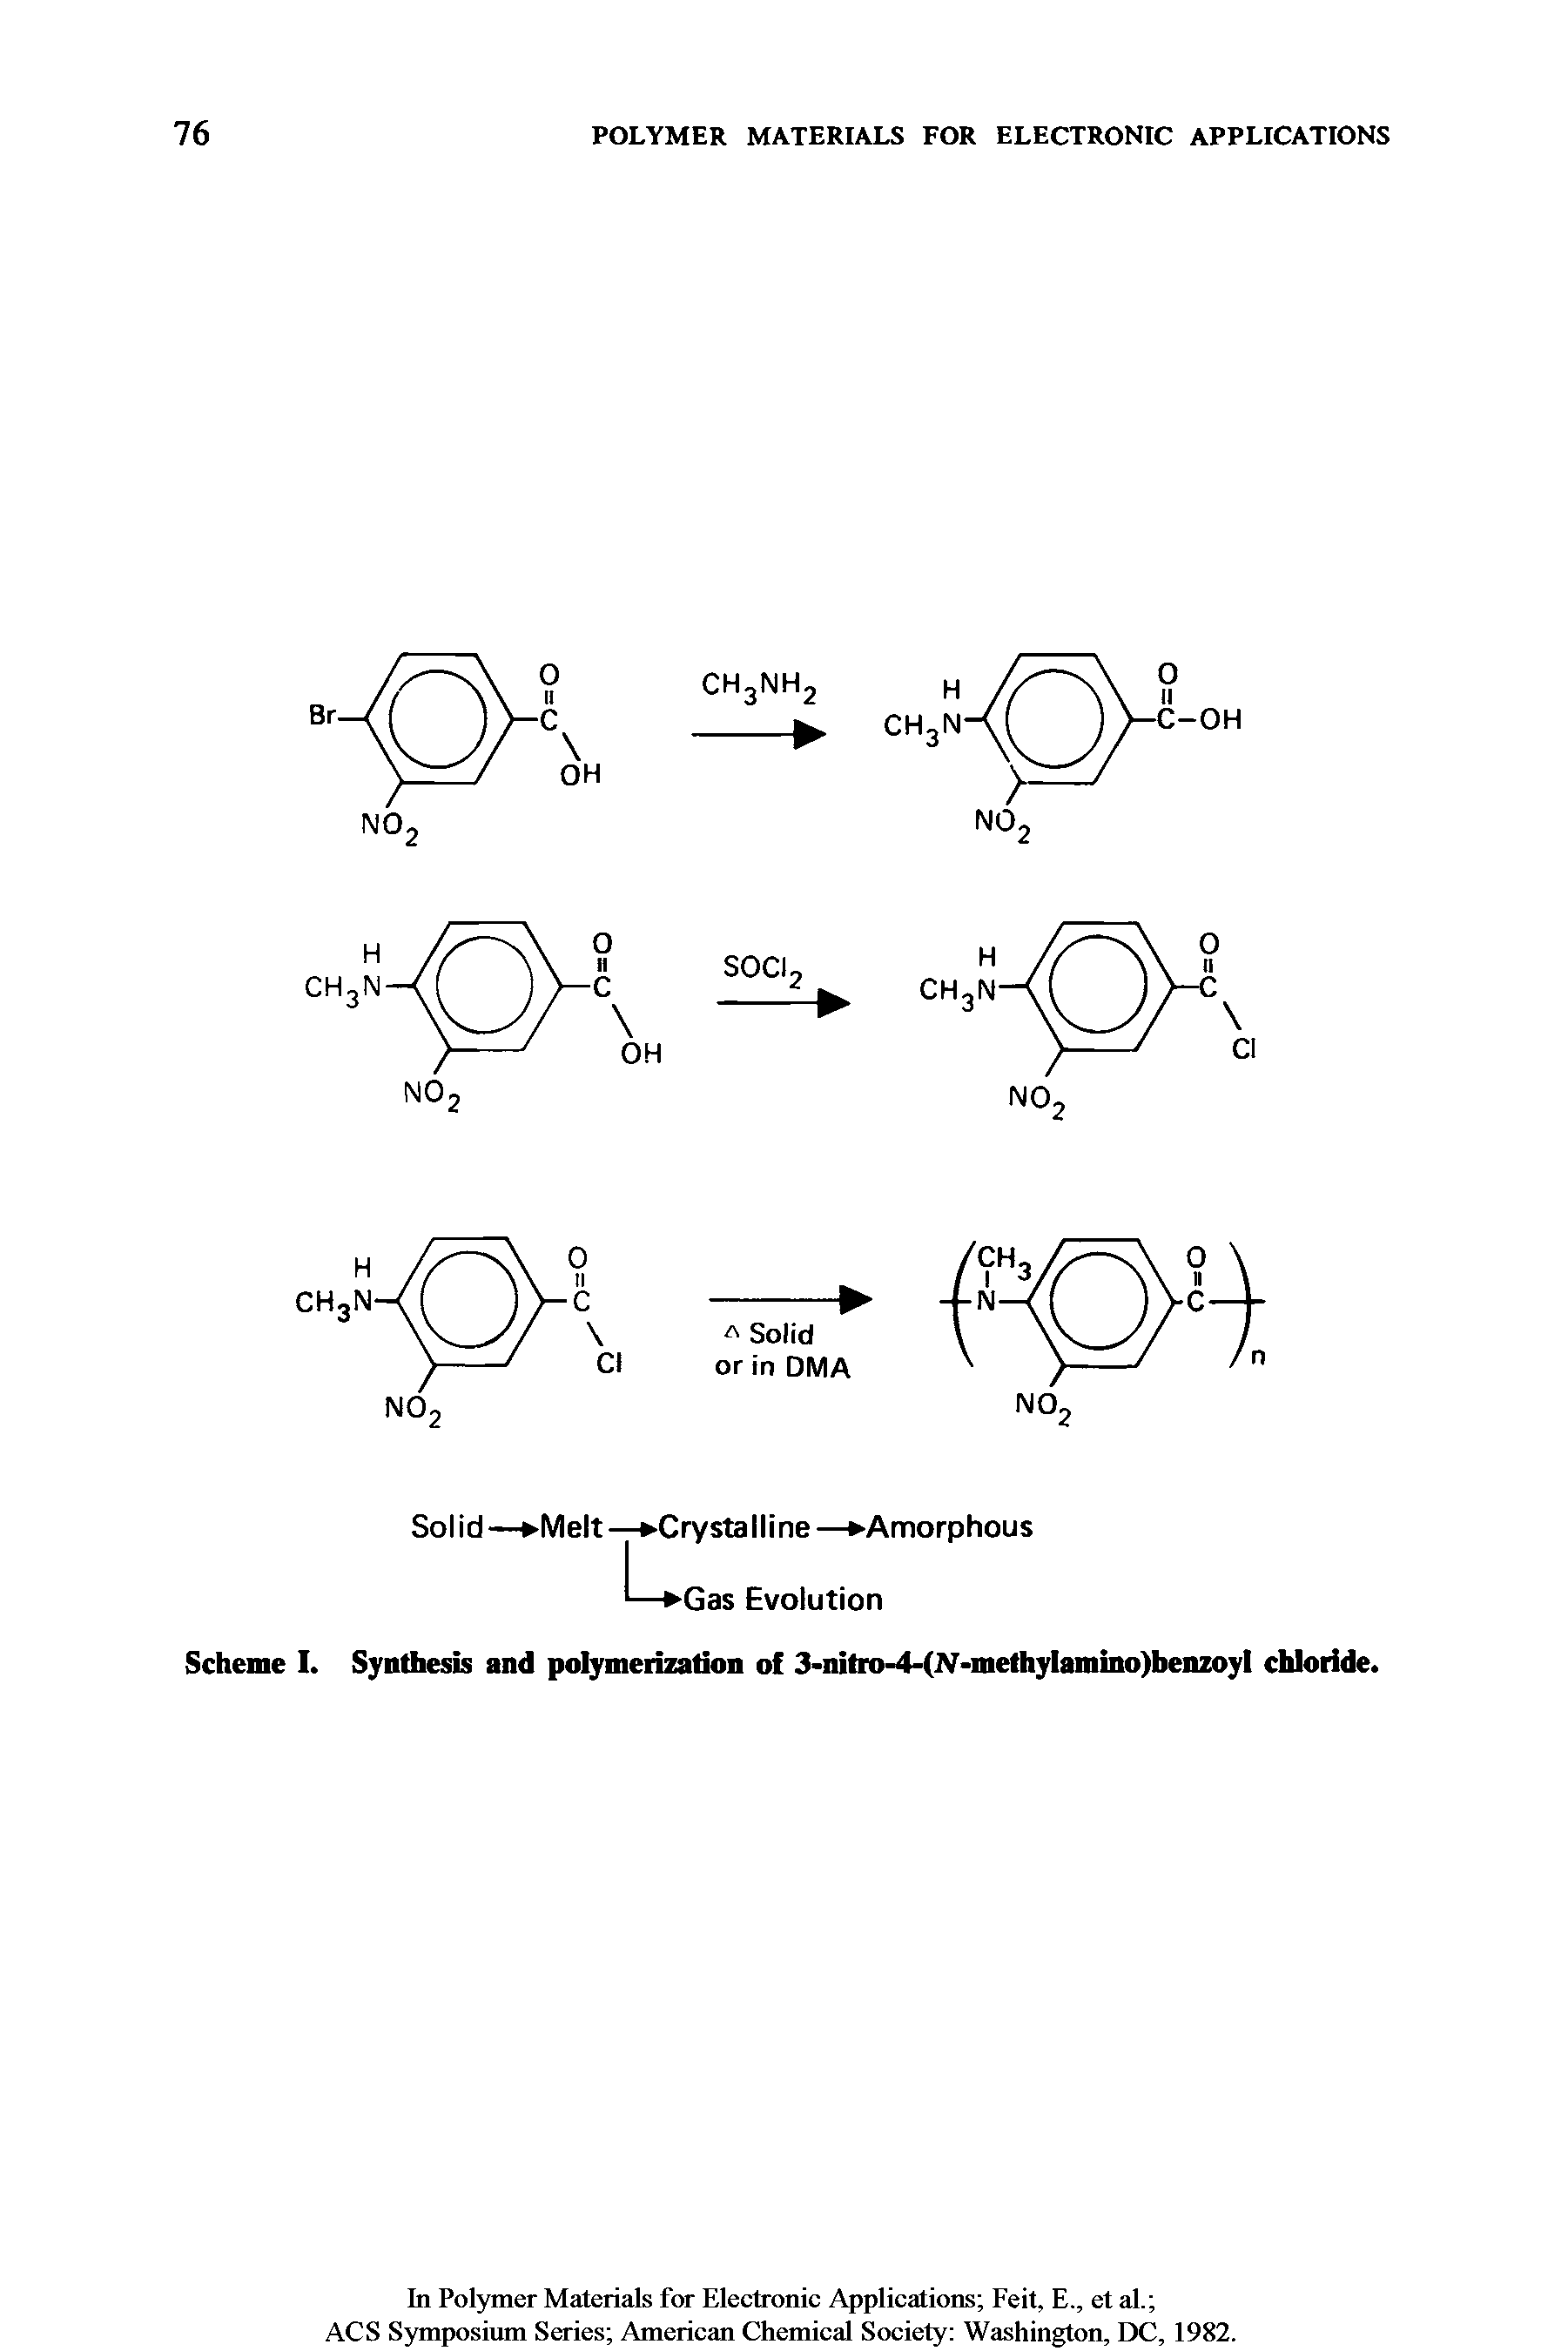 Scheme I. Synthesis and polymerization of 3-nitro-4-(N-methylamino)benzoyl chloride.